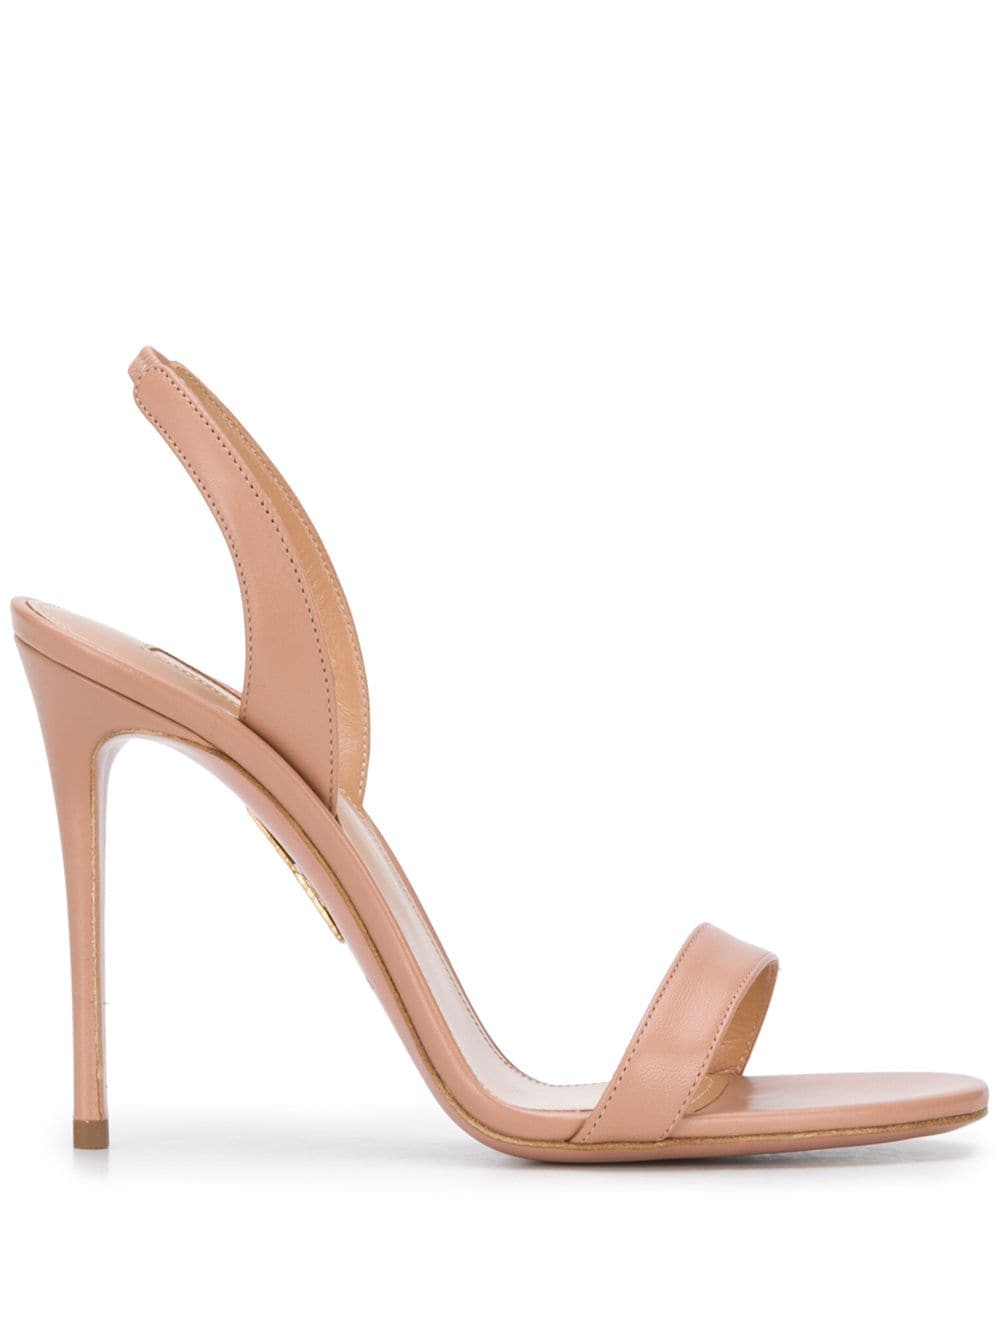 Aquazzura So Nude 105mm sandals - Pink von Aquazzura